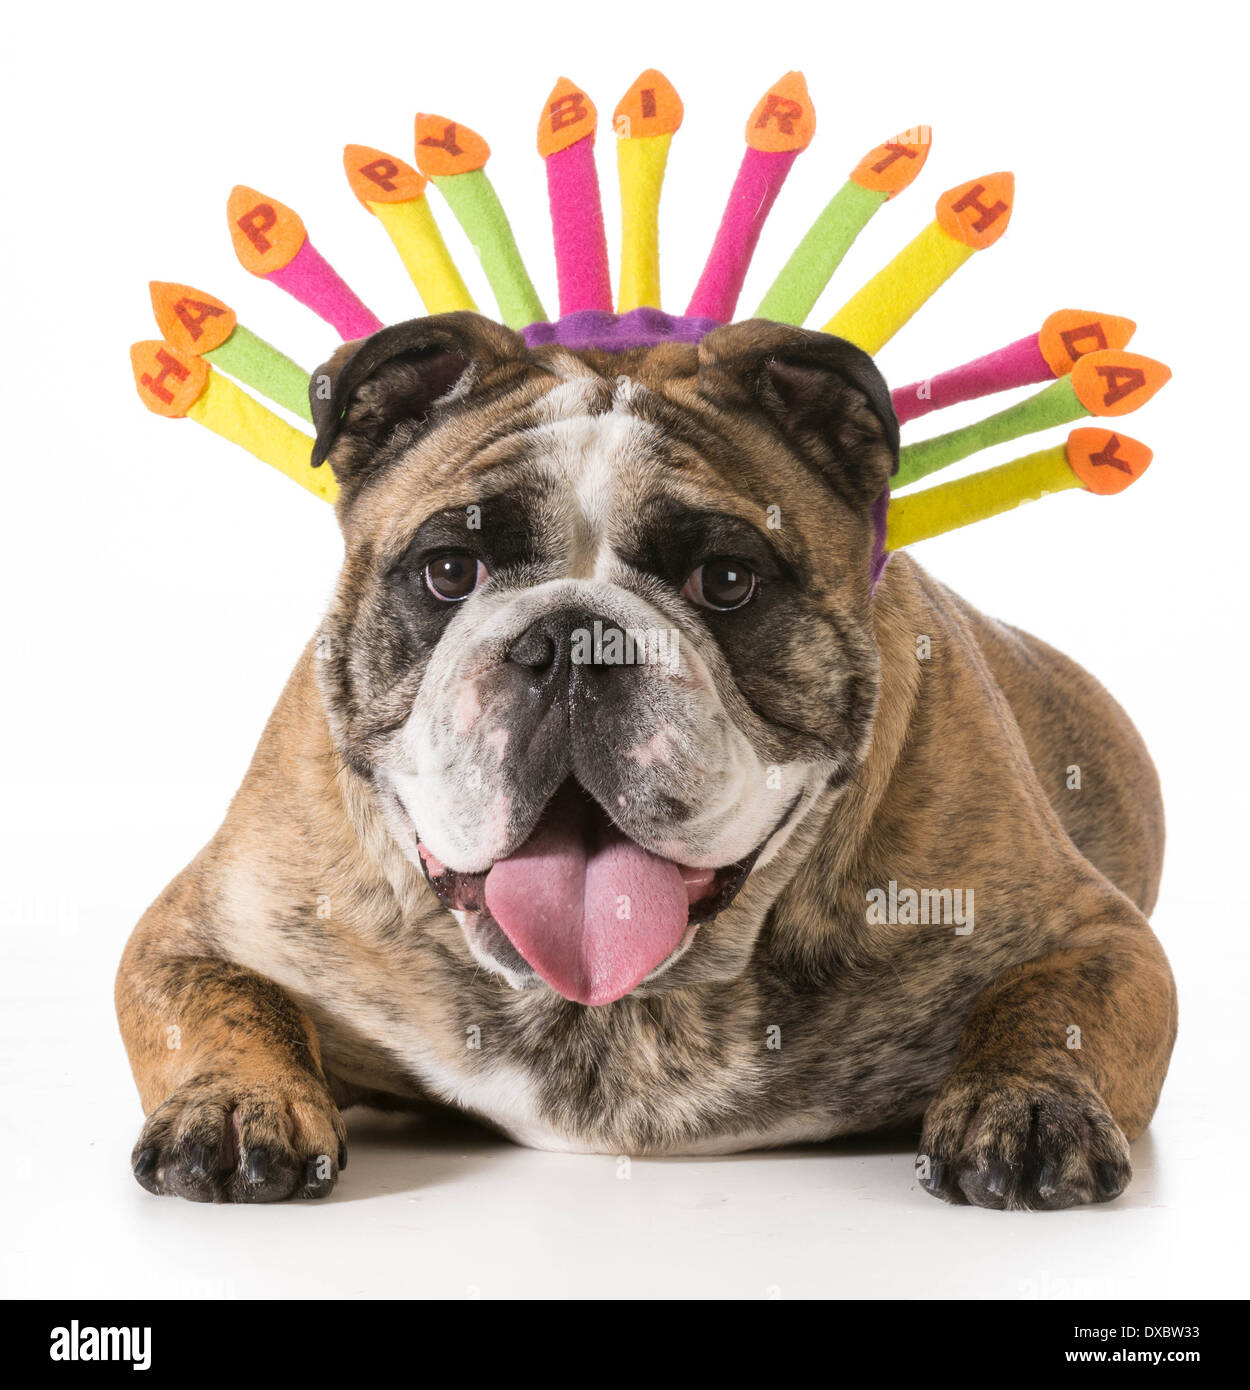 Geburtstag Hund - englische Bulldogge tragen alles Gute zum Geburtstag Hut  - 2-jährige gestromte männlich Stockfotografie - Alamy